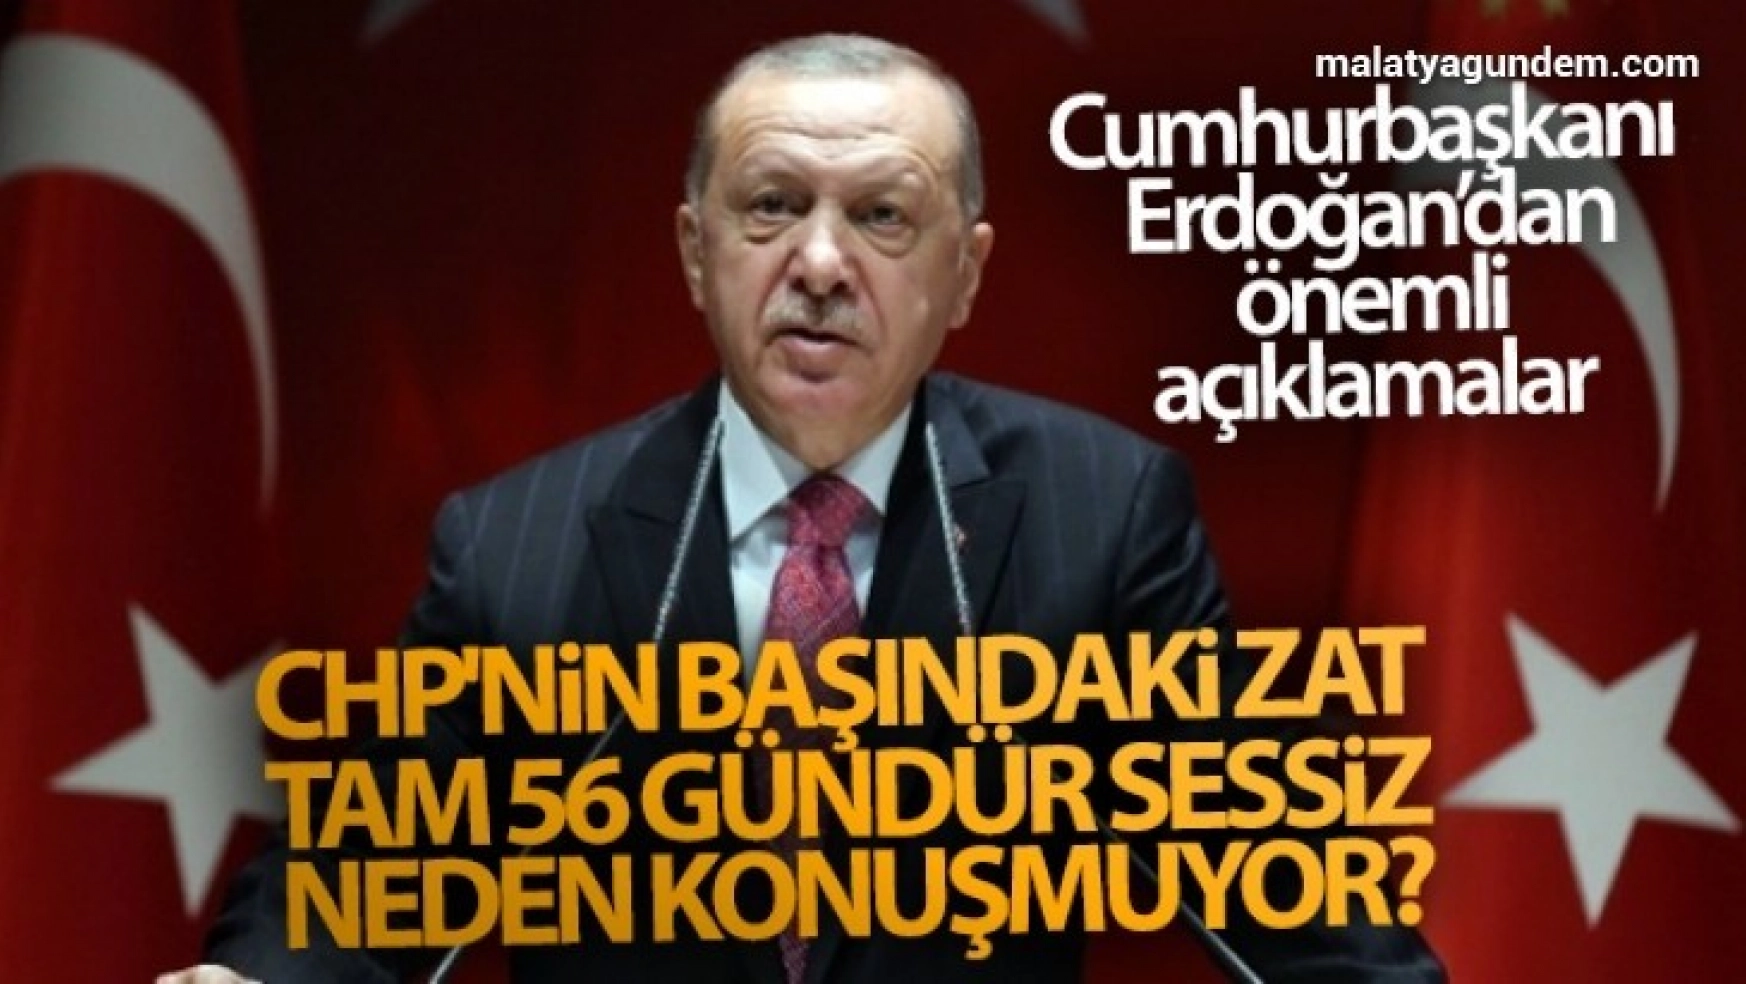 Cumhurbaşkanı Erdoğan: 'CHP'nin başındaki zat, tam 56 gündür sessiz. Neden konuşmuyor?'